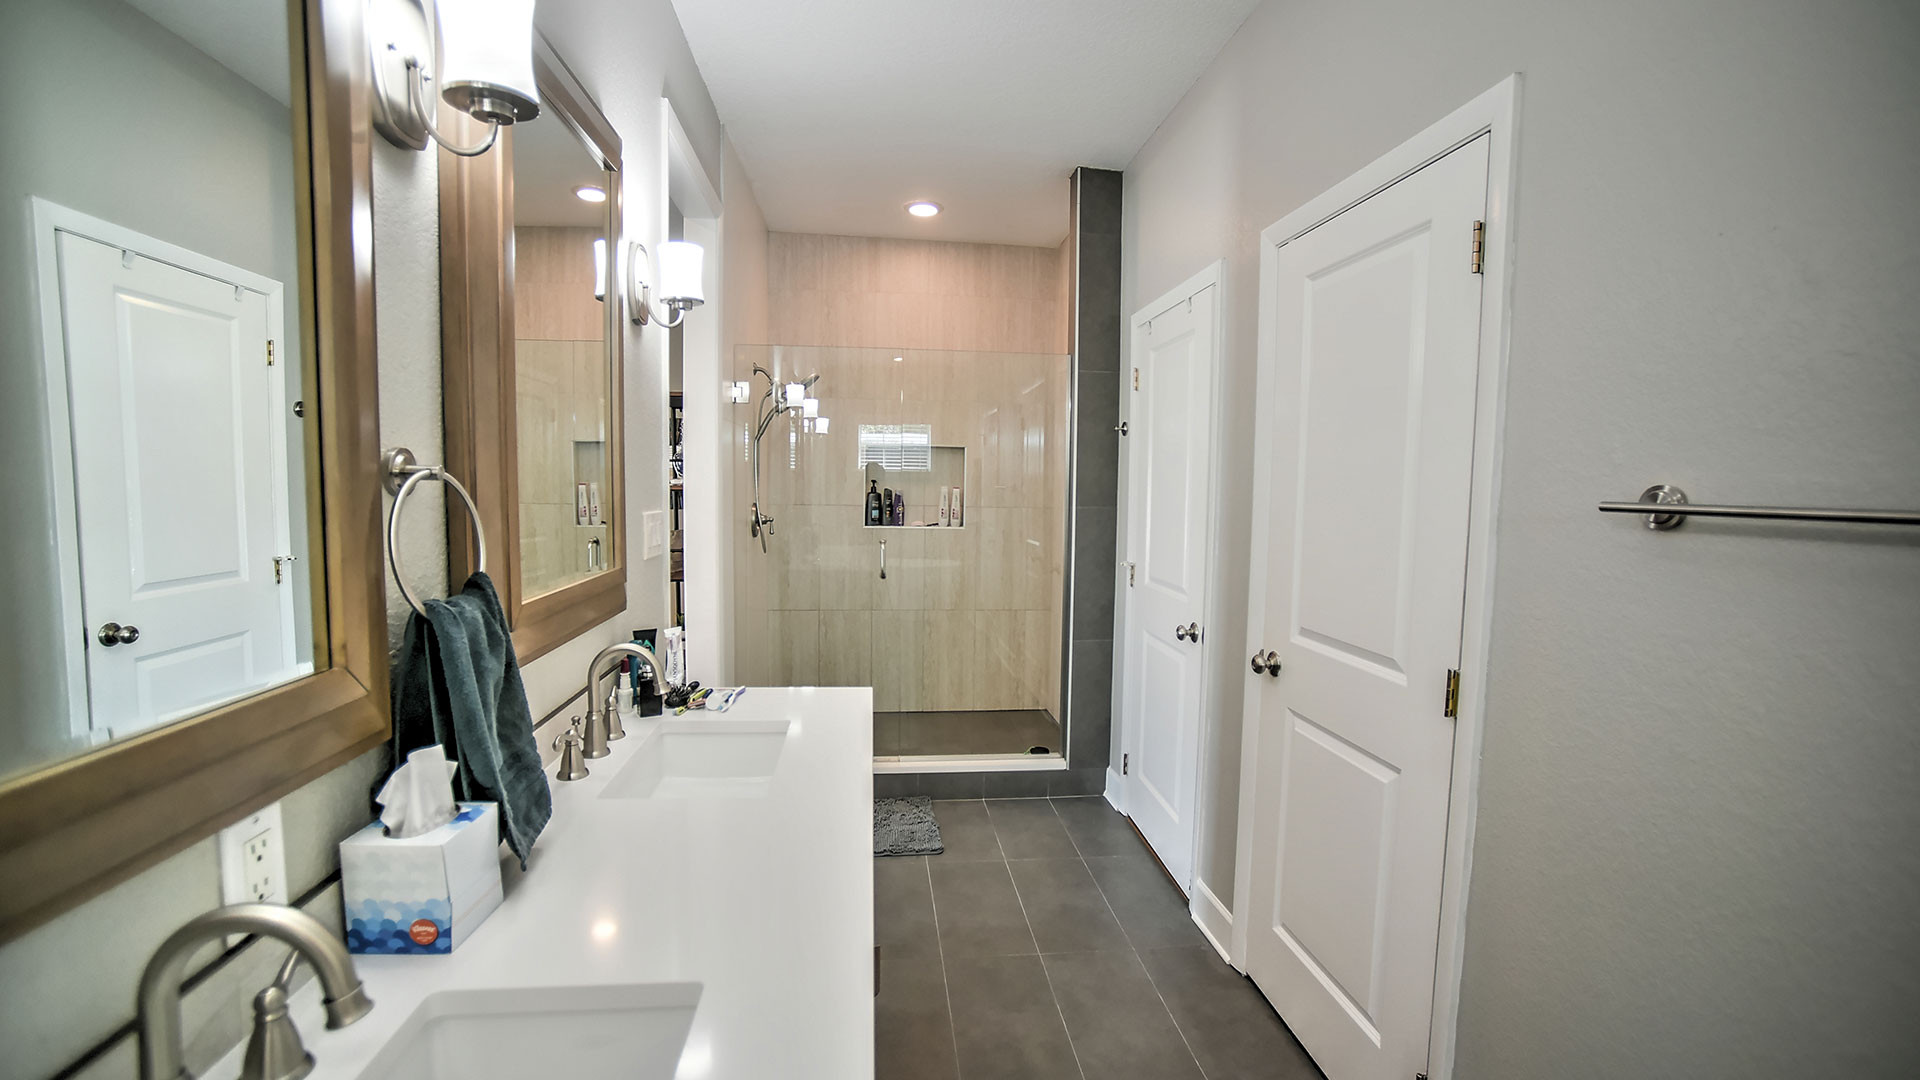 Bathroom Remodel Orlando Fl
 Orlando FL Bathroom Remodel – Riken Construction & Design